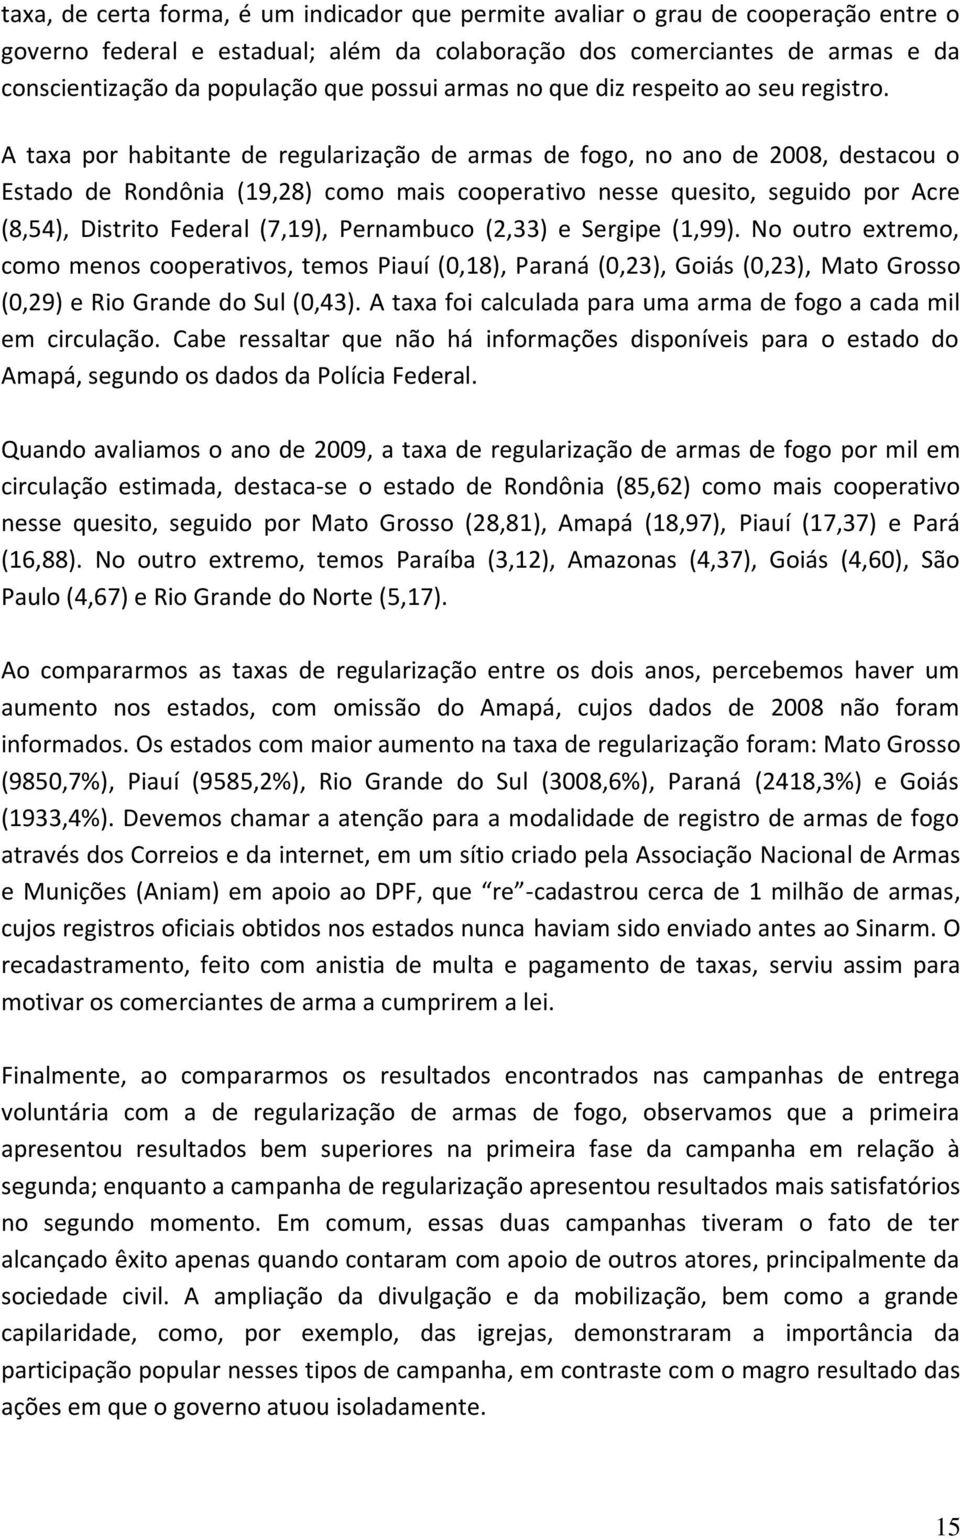 A taxa por habitante de regularização de armas de fogo, no ano de 2008, destacou o Estado de Rondônia (19,28) como mais cooperativo nesse quesito, seguido por Acre (8,54), Distrito Federal (7,19),